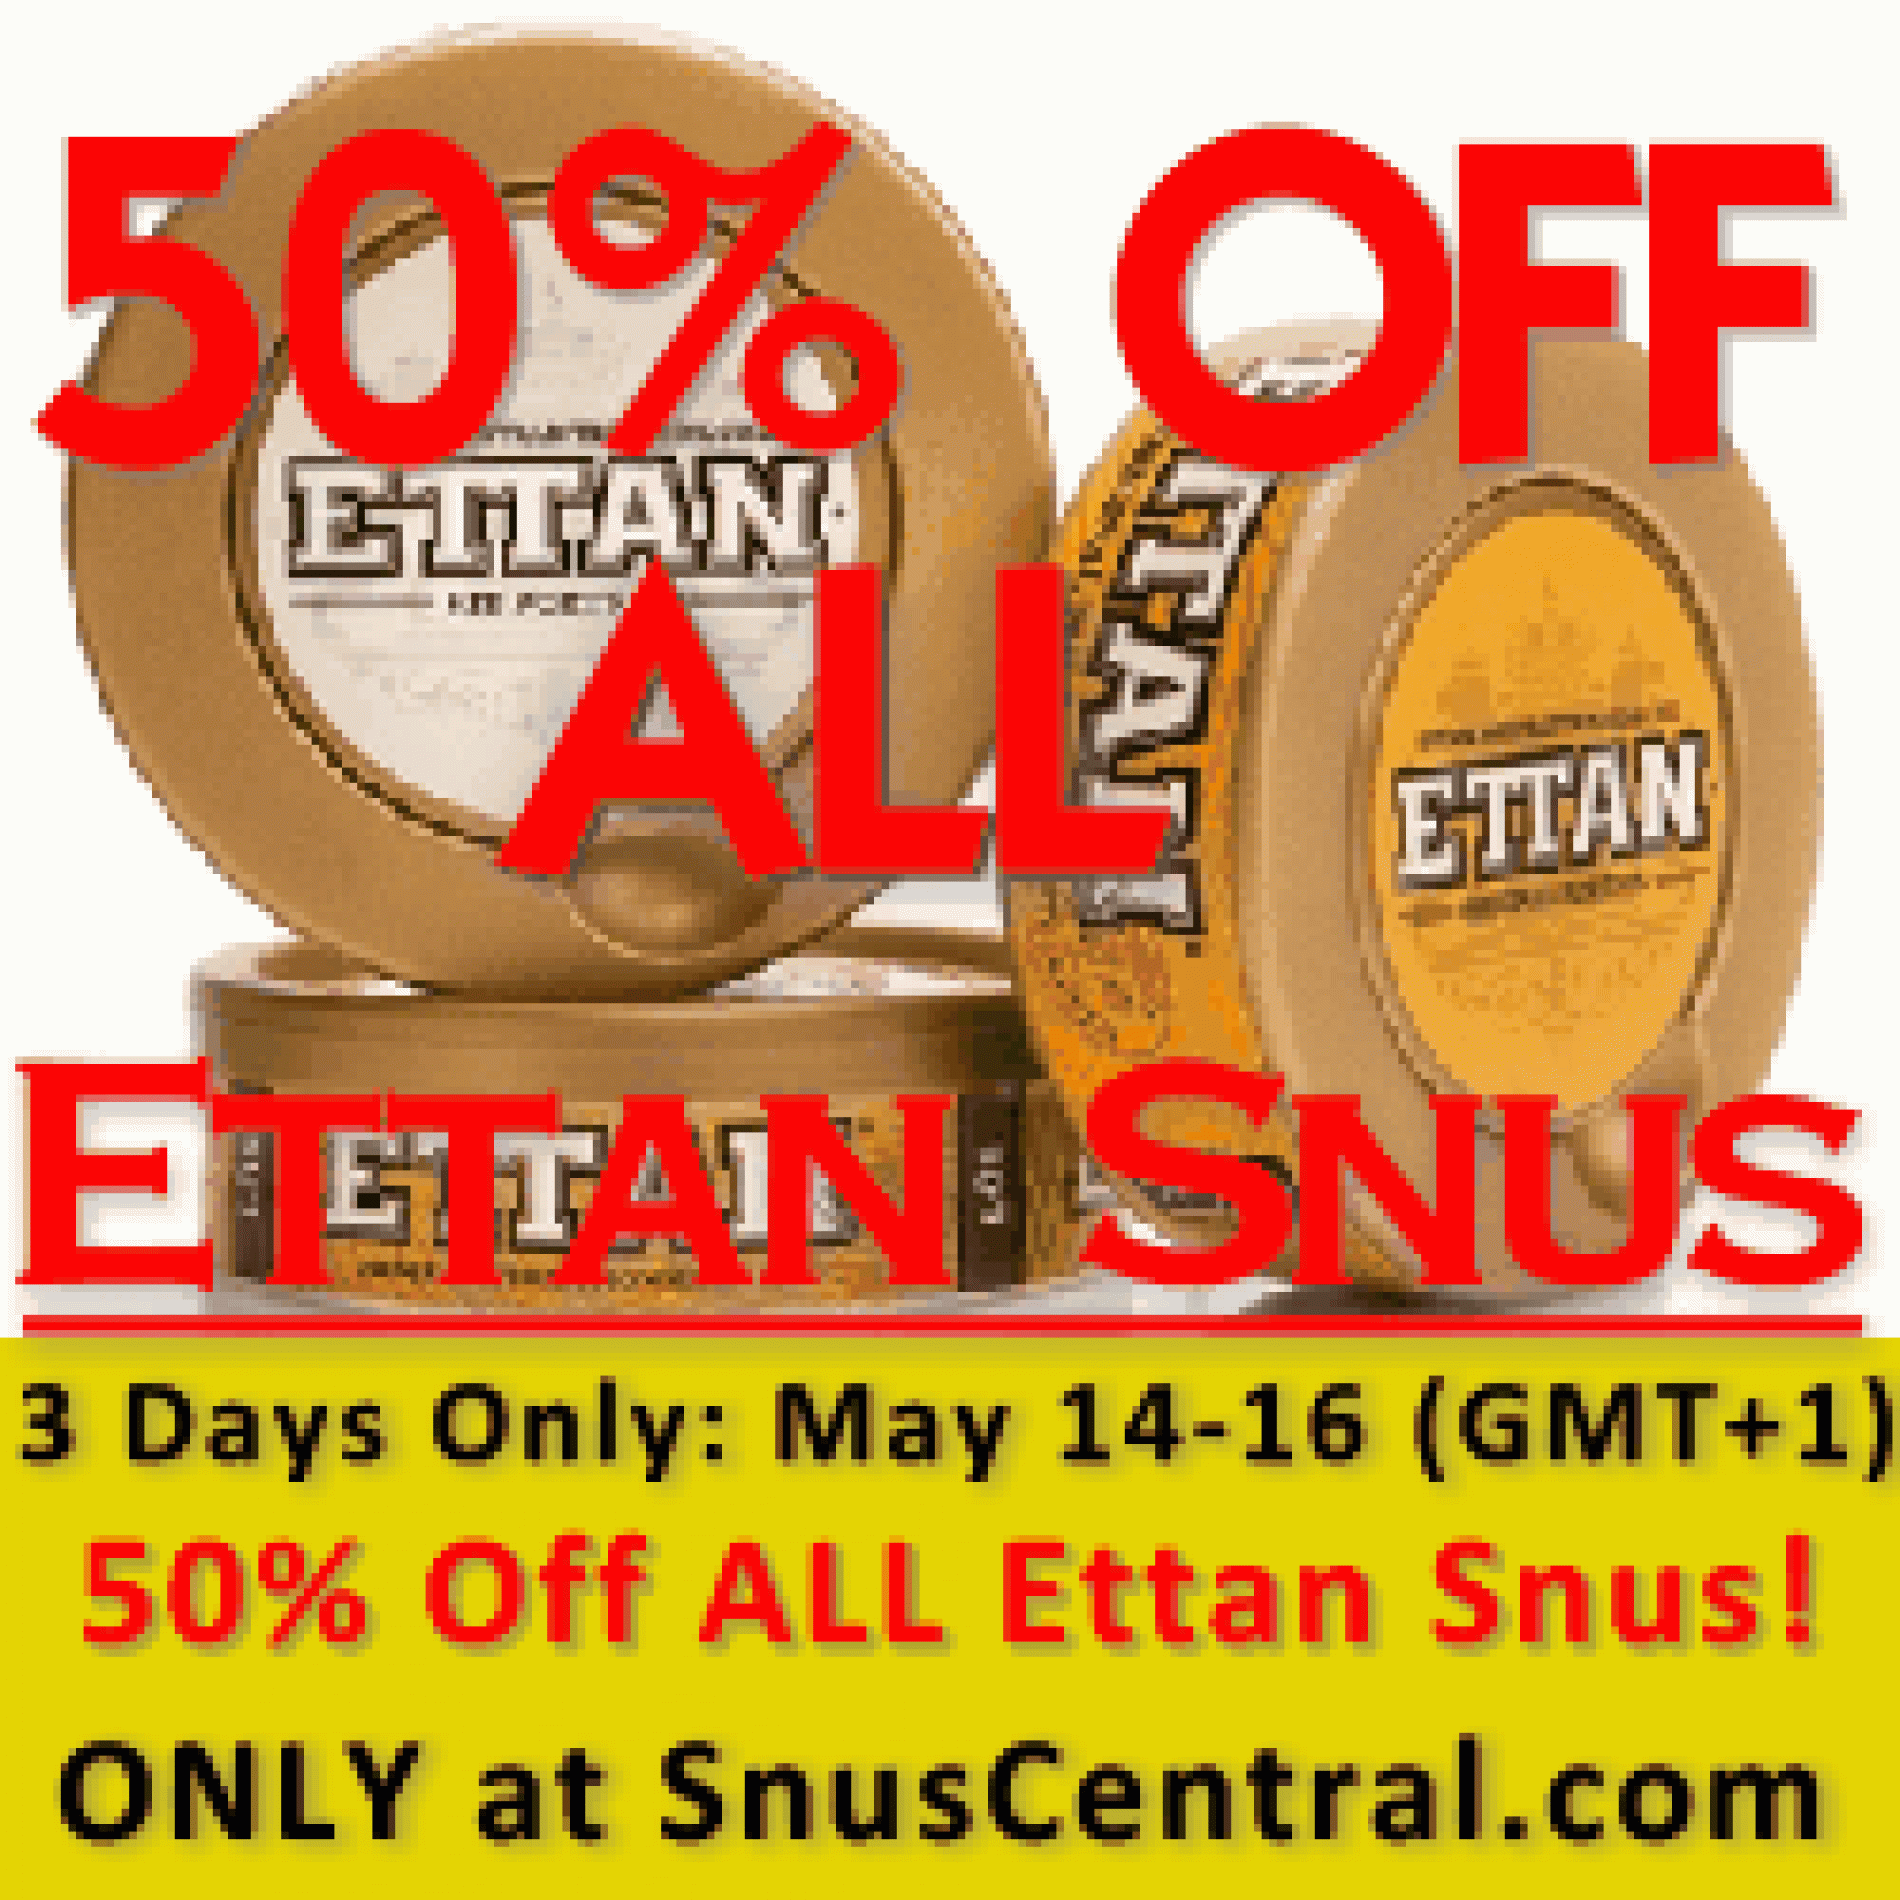 The Ettan Snus Event: 50% OFF!